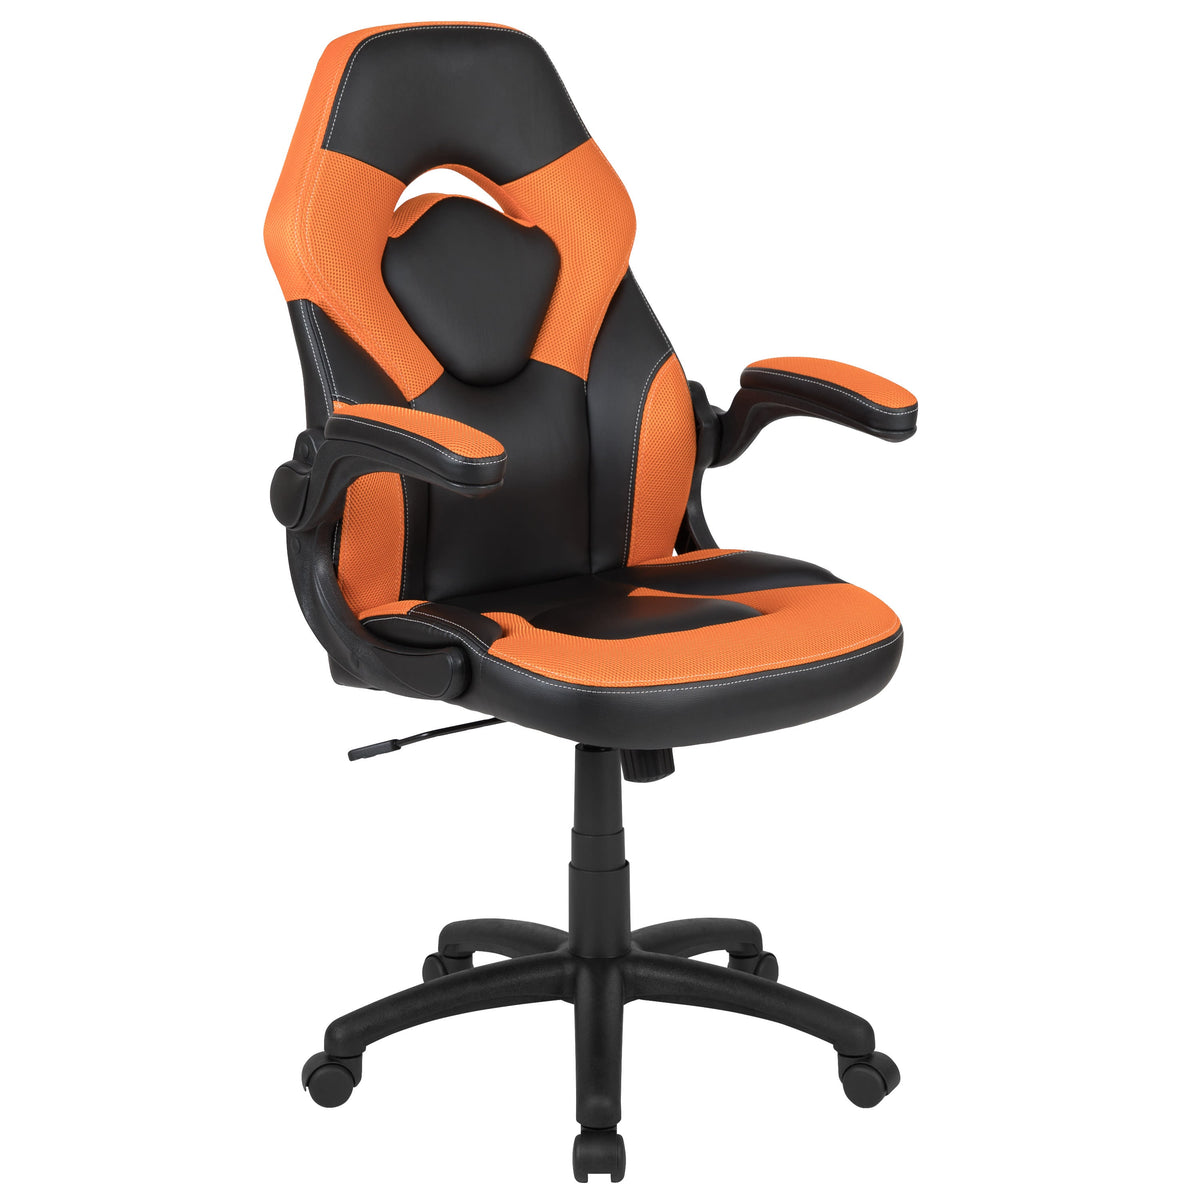 Orange |#| Desk Bundle - Red Gaming Desk, Cup Holder, Headphone Hook and Orange Chair